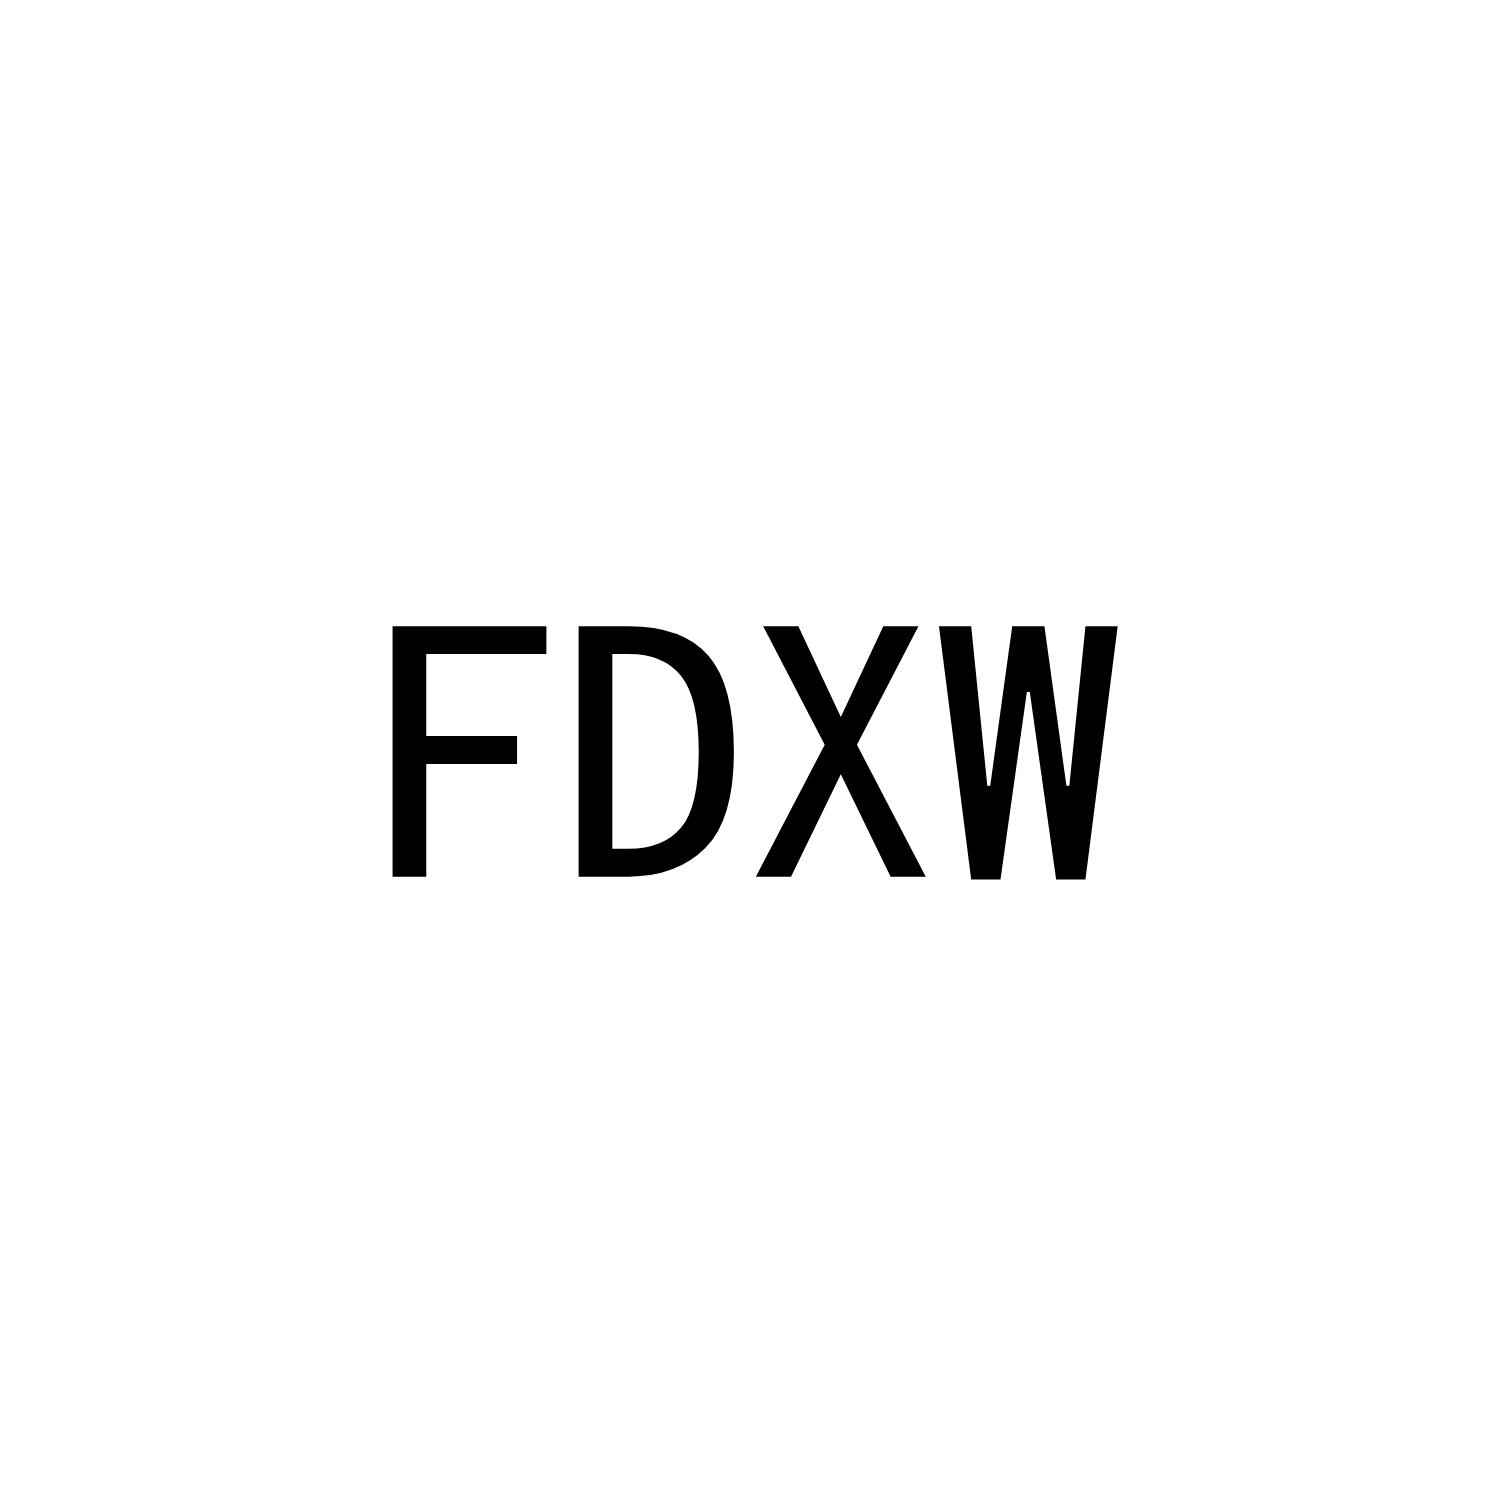 FDXW